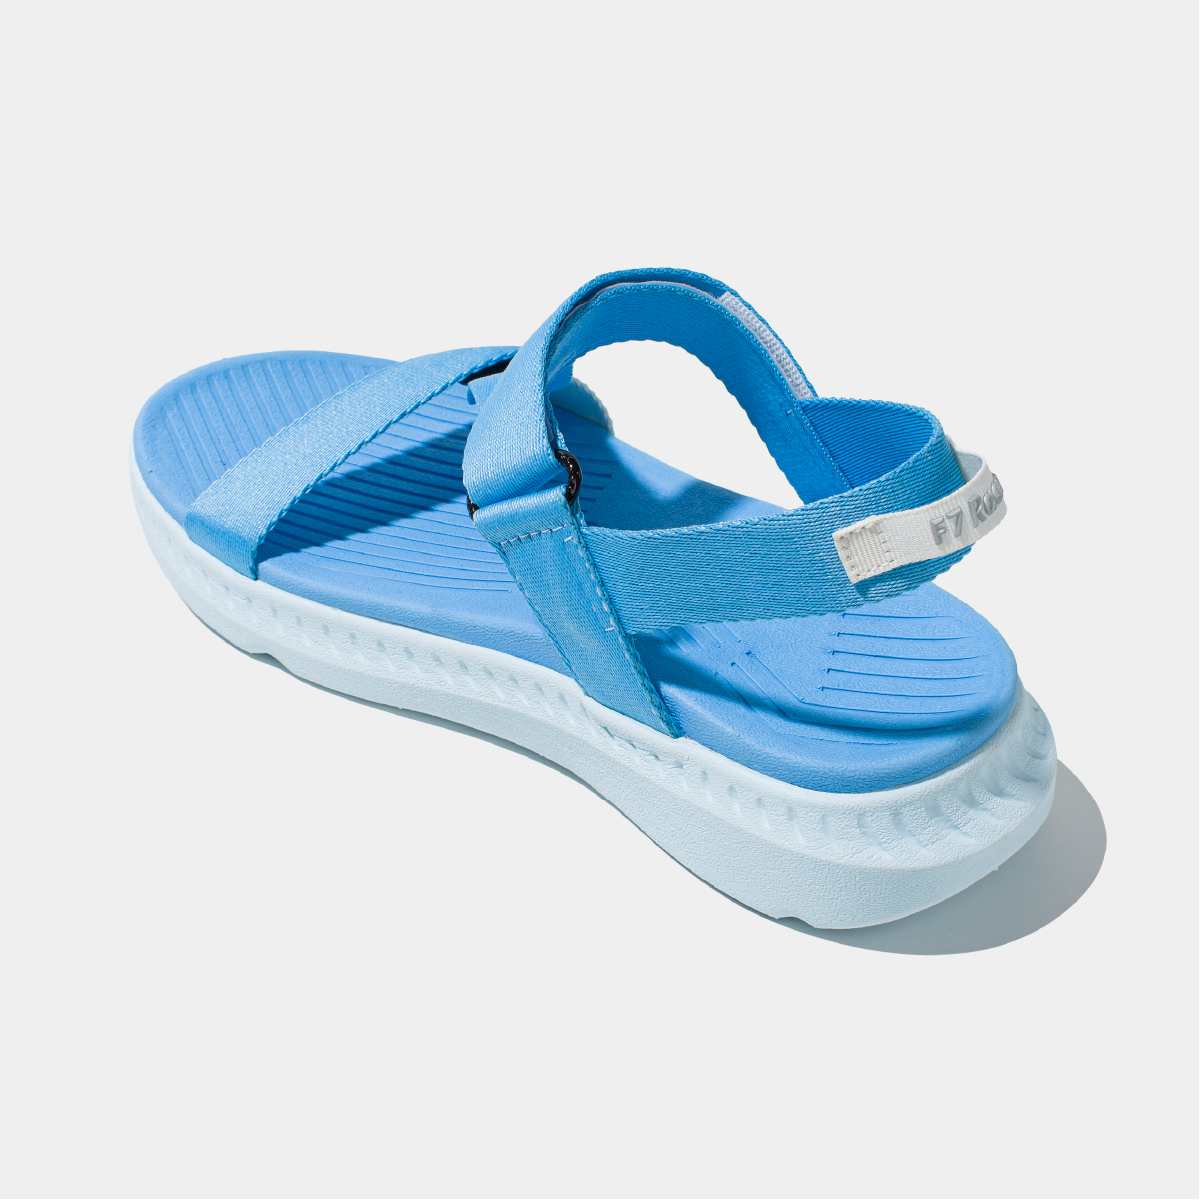 Sandals F7 Racing xanh dương xanh da trời